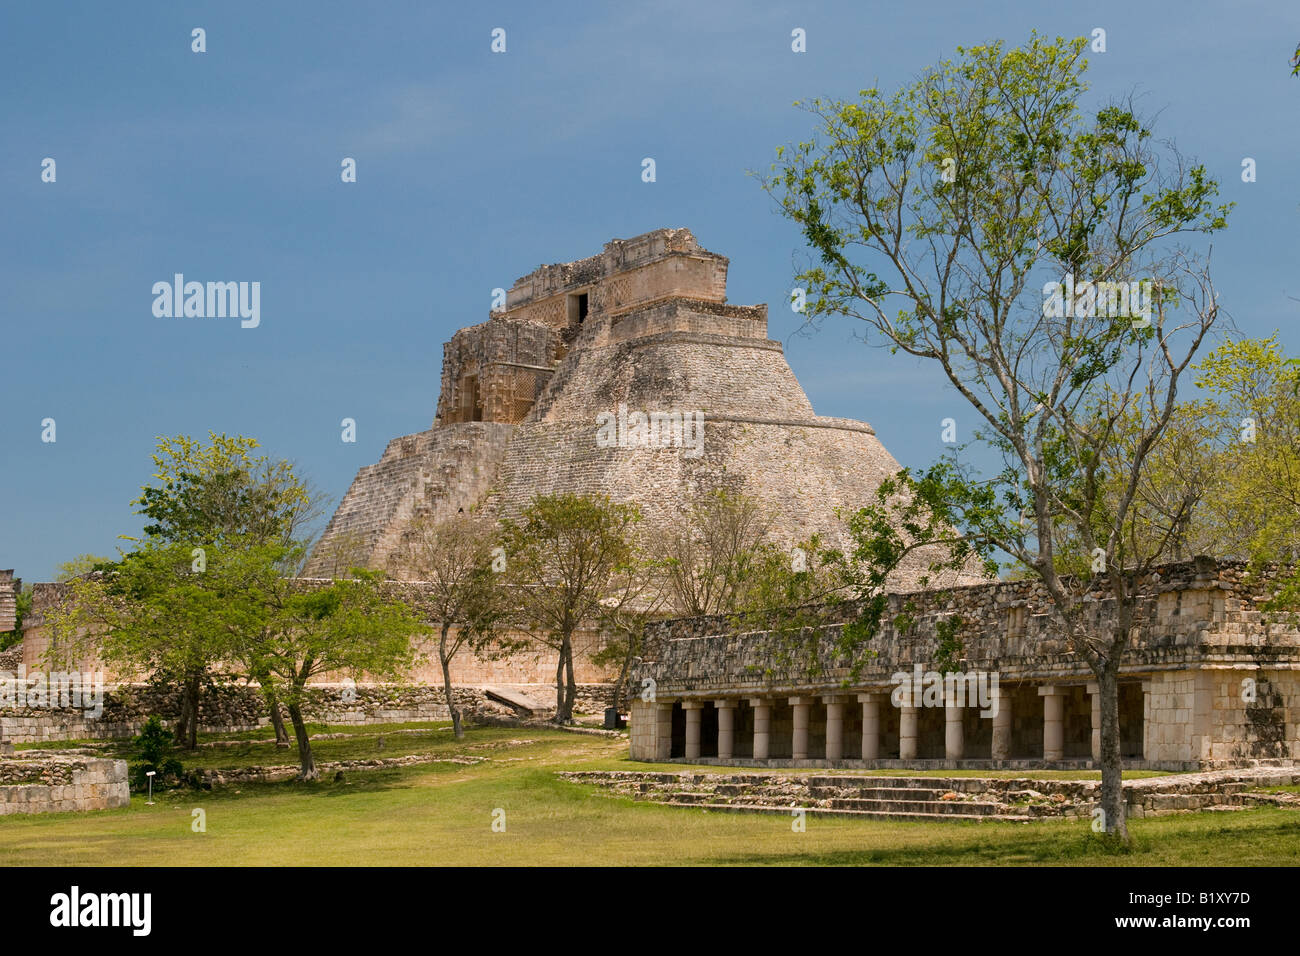 The Pyramid of the magician at the ancient Mayan ruins of Uxmal Mexico Stock Photo